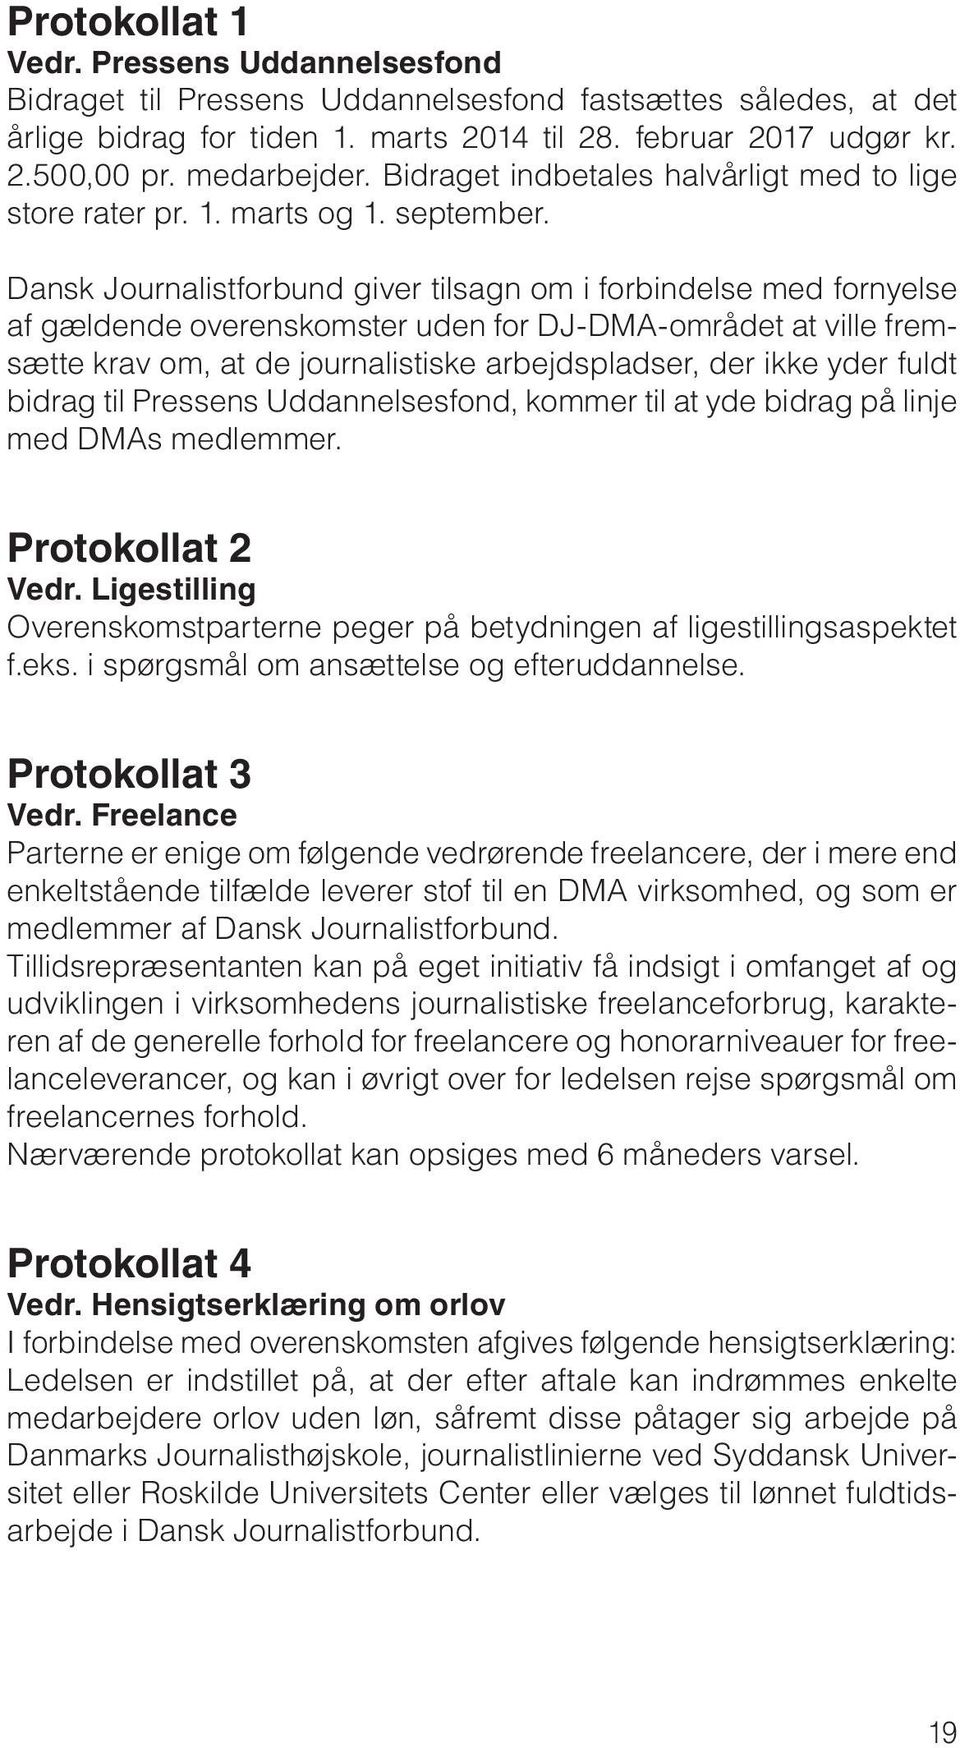 Dansk Journalistforbund giver tilsagn om i forbindelse med fornyelse af gældende overenskomster uden for DJ-DMA-området at ville fremsætte krav om, at de journalistiske arbejdspladser, der ikke yder